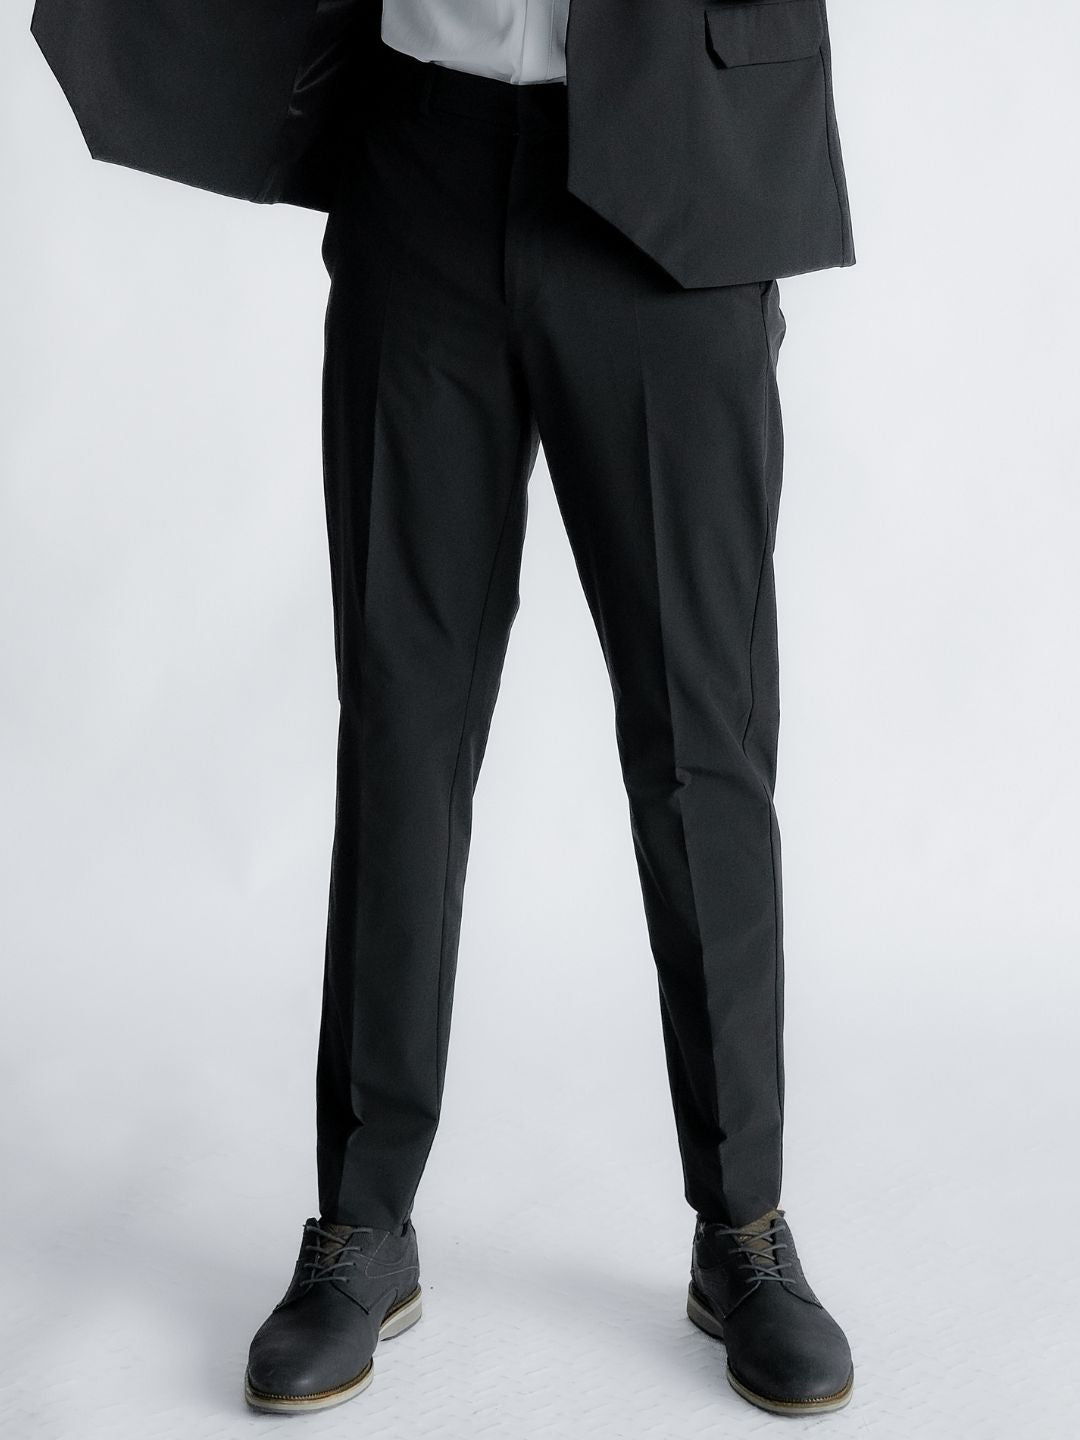 Ultra Suit 3.0 雙排扣套裝組合 經典黑 - TRANZEND